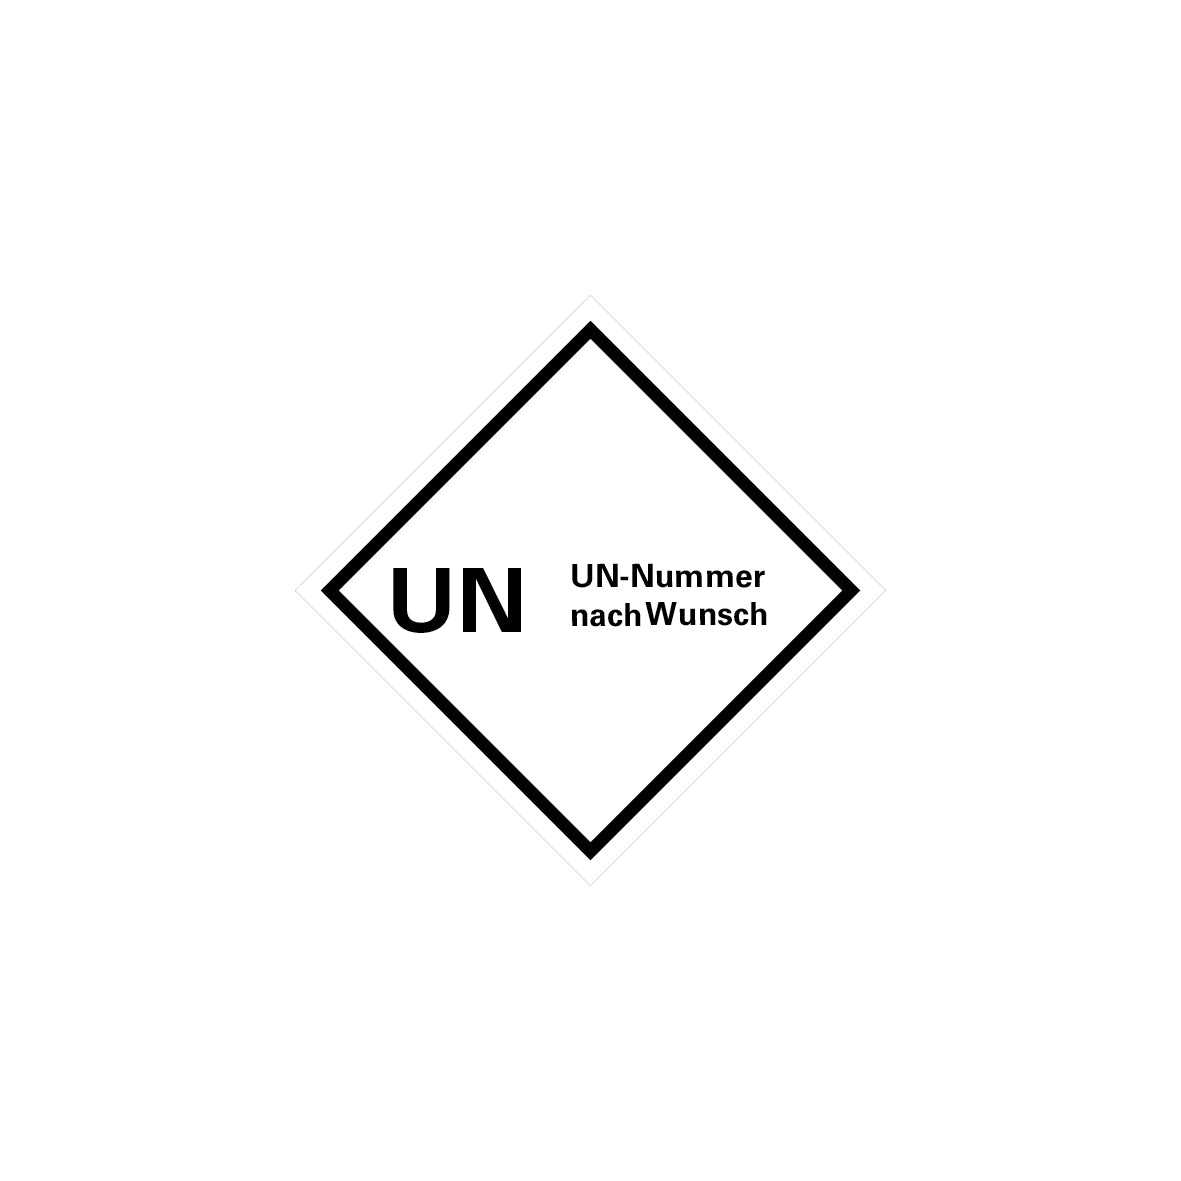 Gefahrgut UN, 5.0159, 100 x 100 mm, Stk., UN mit UN-Nummern, auf Bogen, VE 10 Stk.